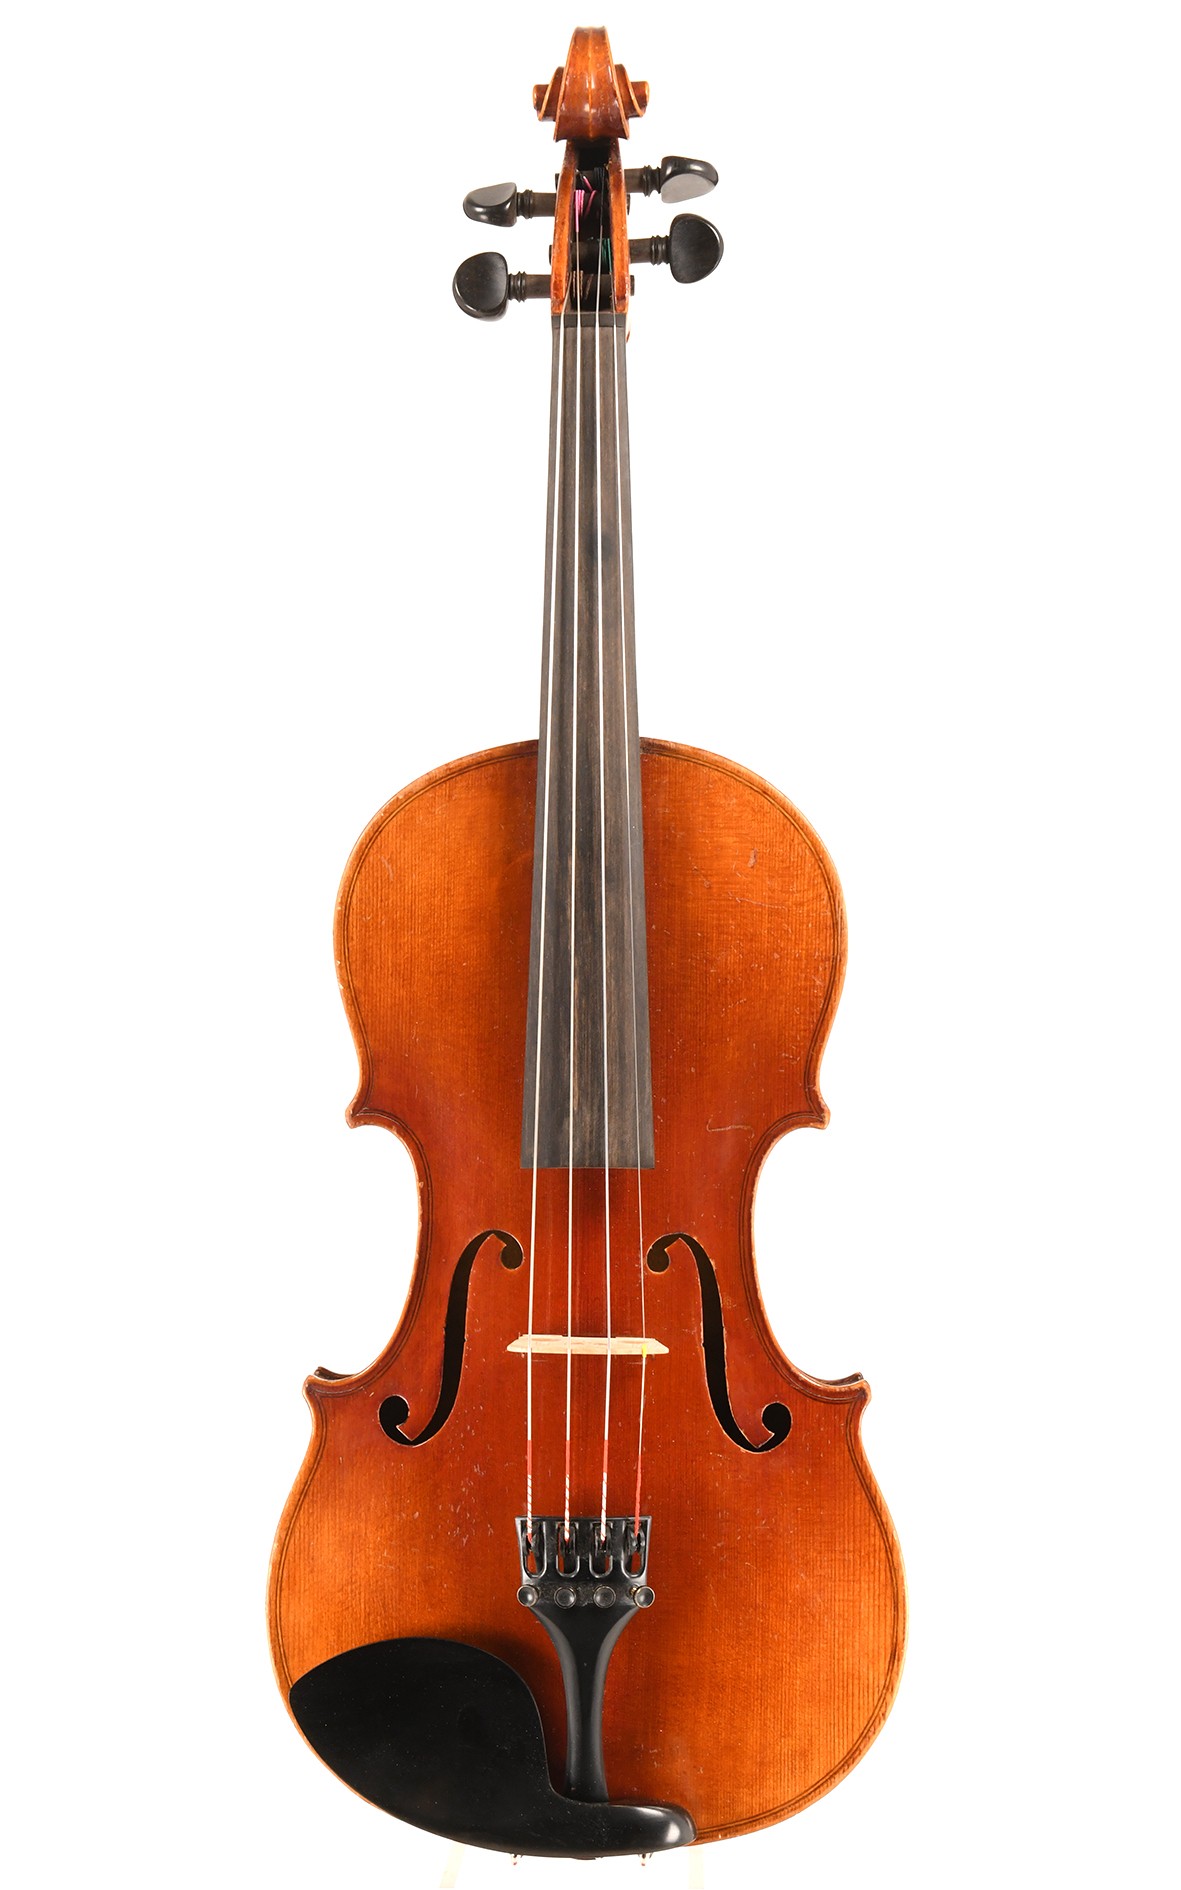 Qualitätvolle Deutsche Geige nach Stradivari, um 1920